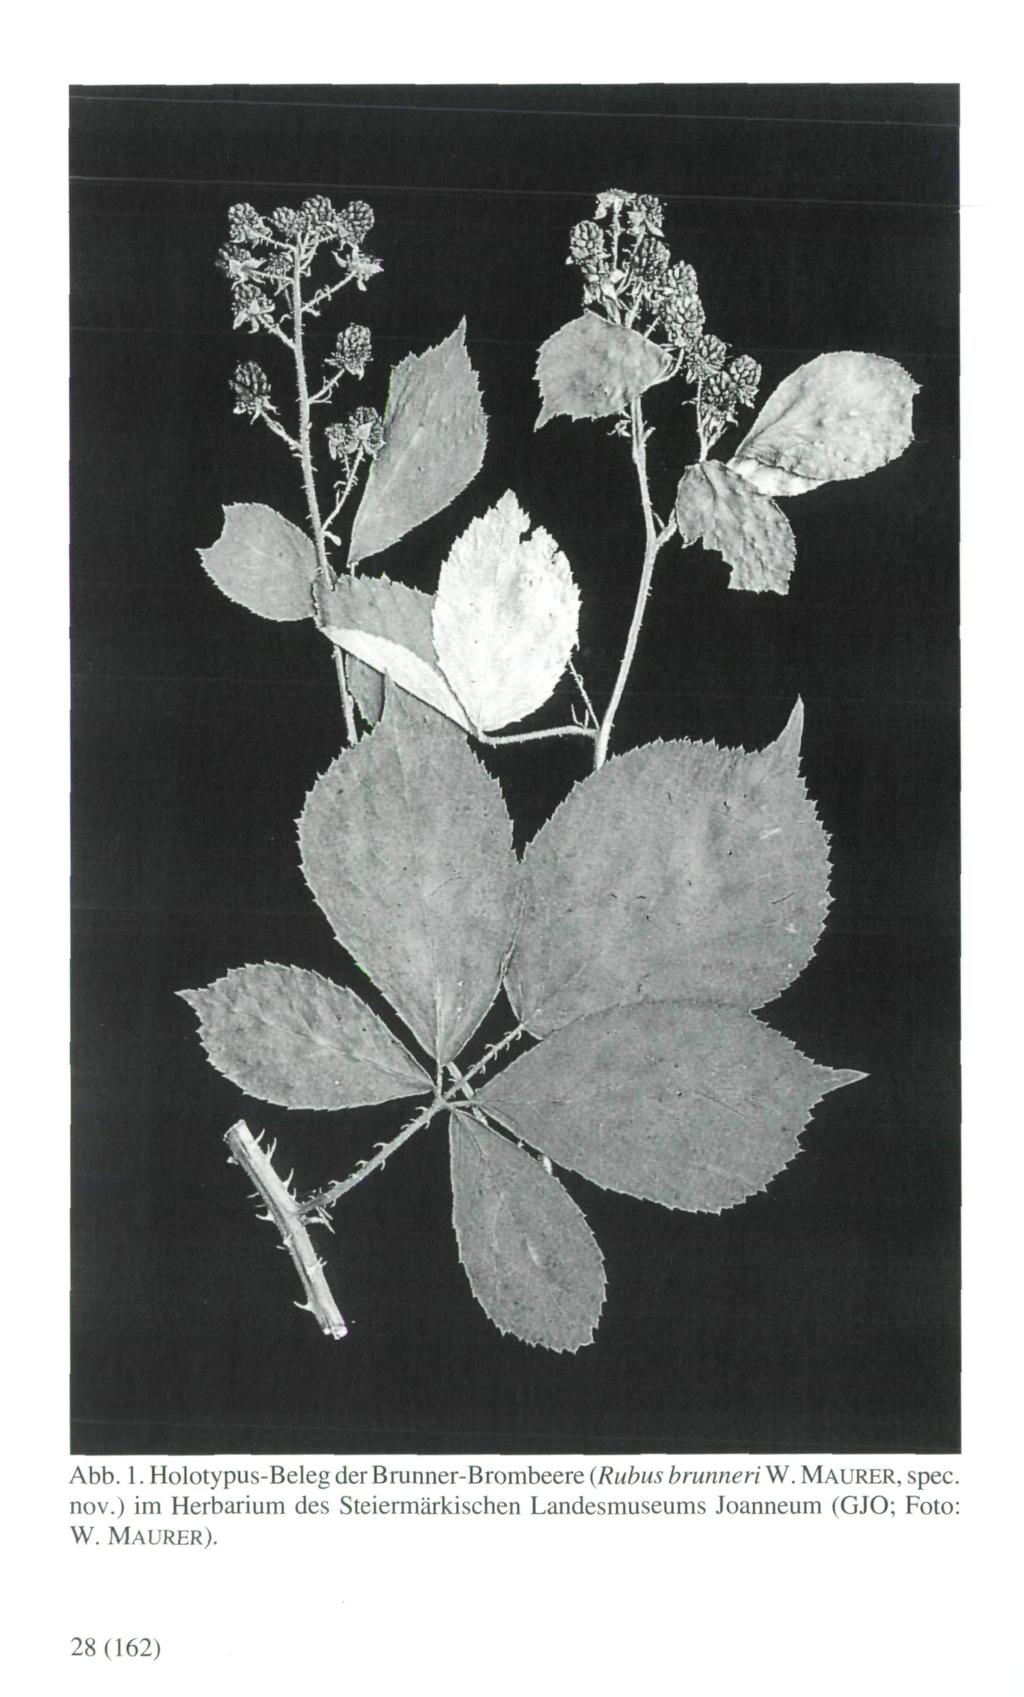 Abb. 1. Holotypus-Beleg der Brunner-Brombeere (Rubus brunneri W. MAURER, spec, nov.